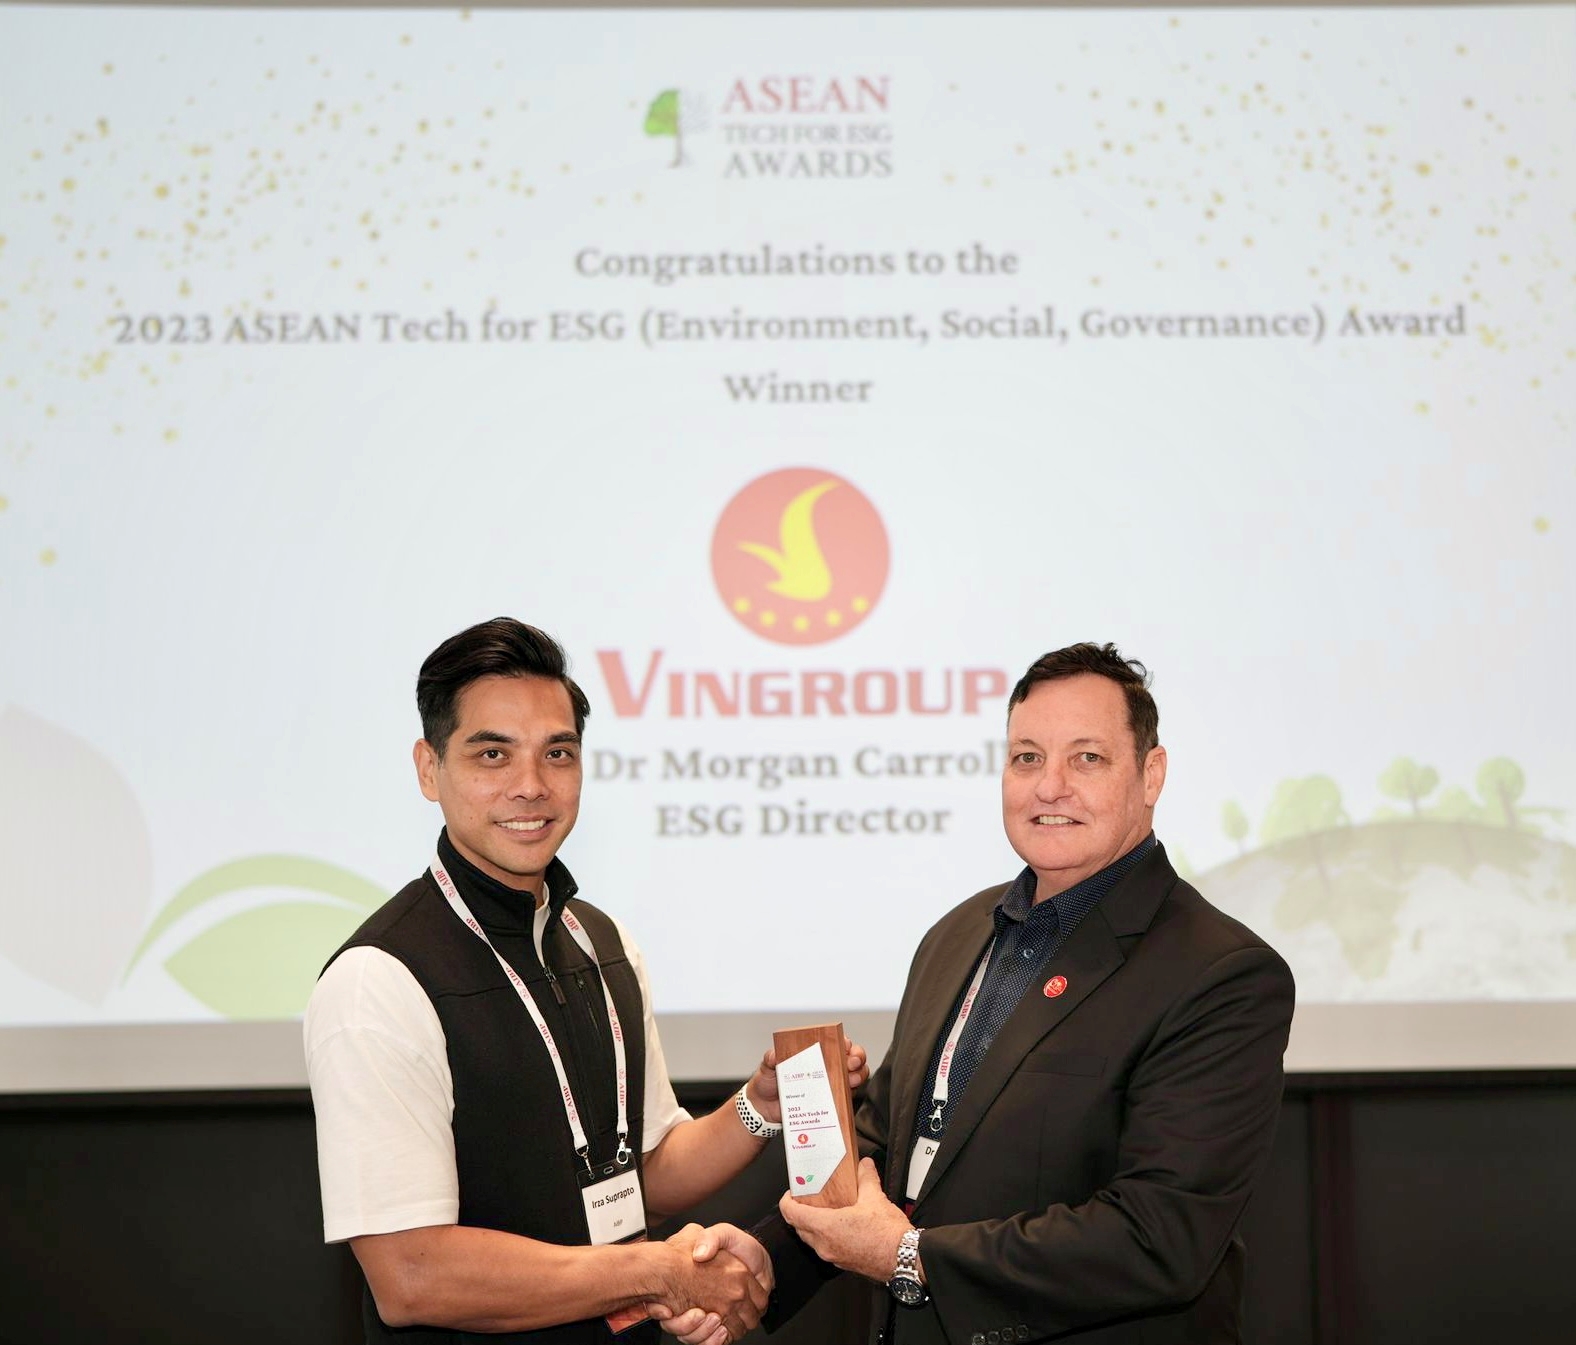 Tiến sĩ Morgan Carroll (bên phải) đại diện Vingroup nhận giải thưởng công nghệ bền vững ASEAN 2023 tại lễ trao giải ở Singapore.